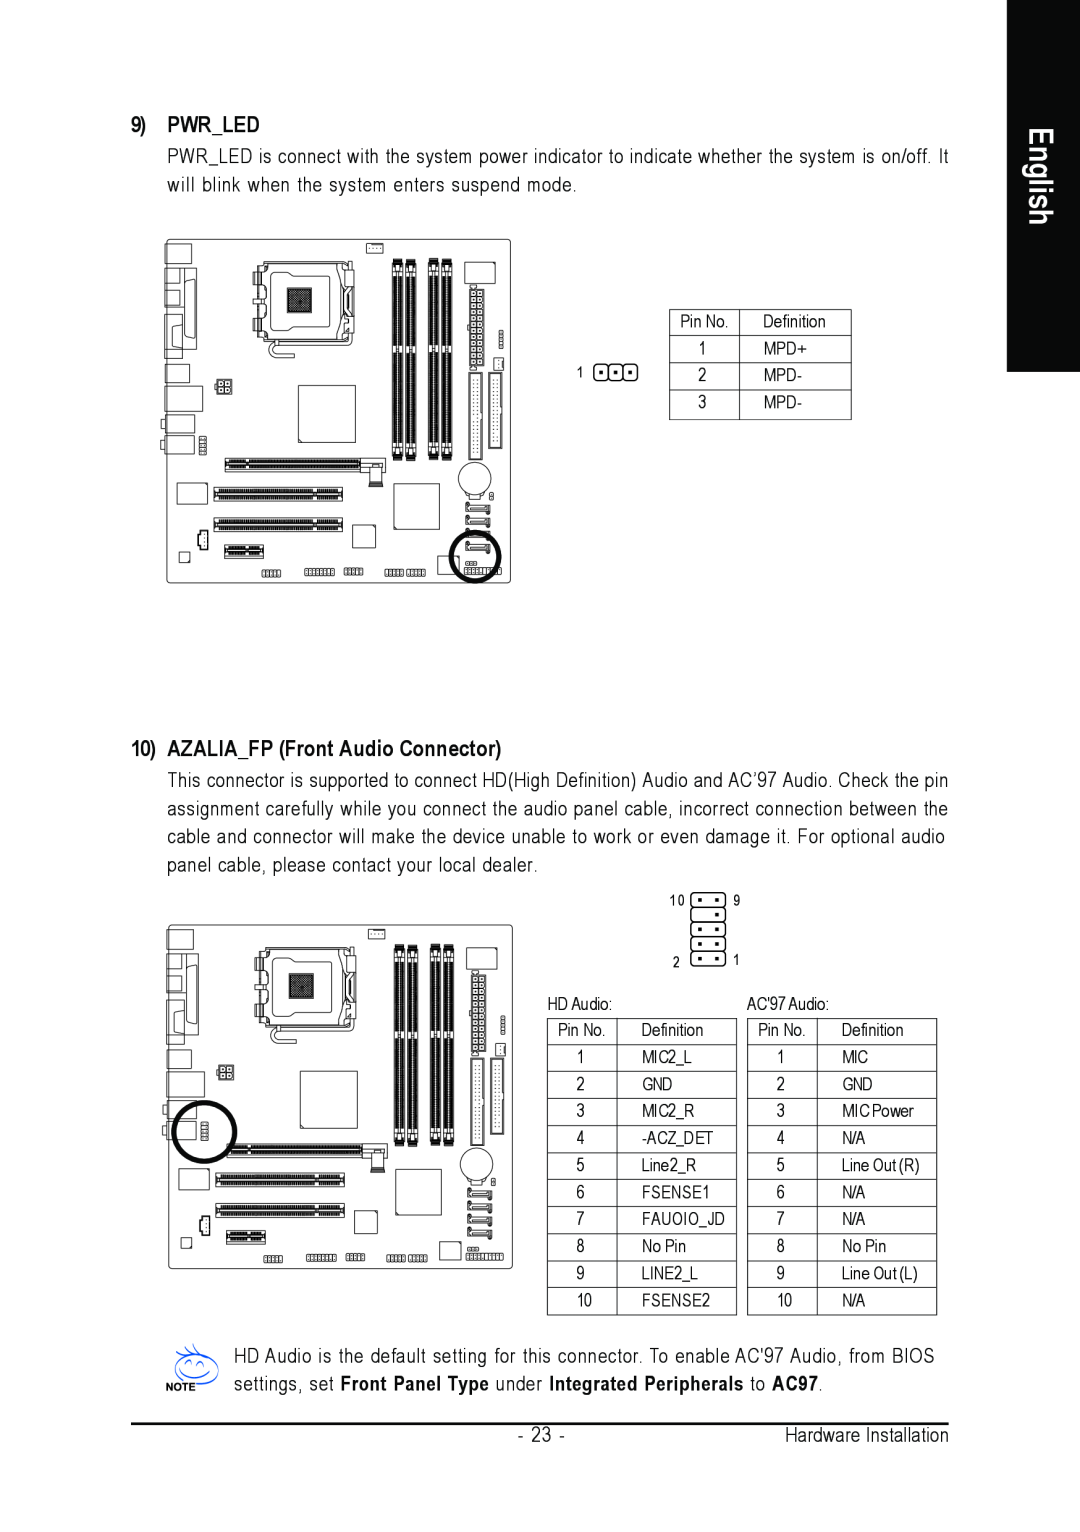 Gigabyte GA-8I915P-MF user manual Pwrled, AZALIAFP Front Audio Connector, English 